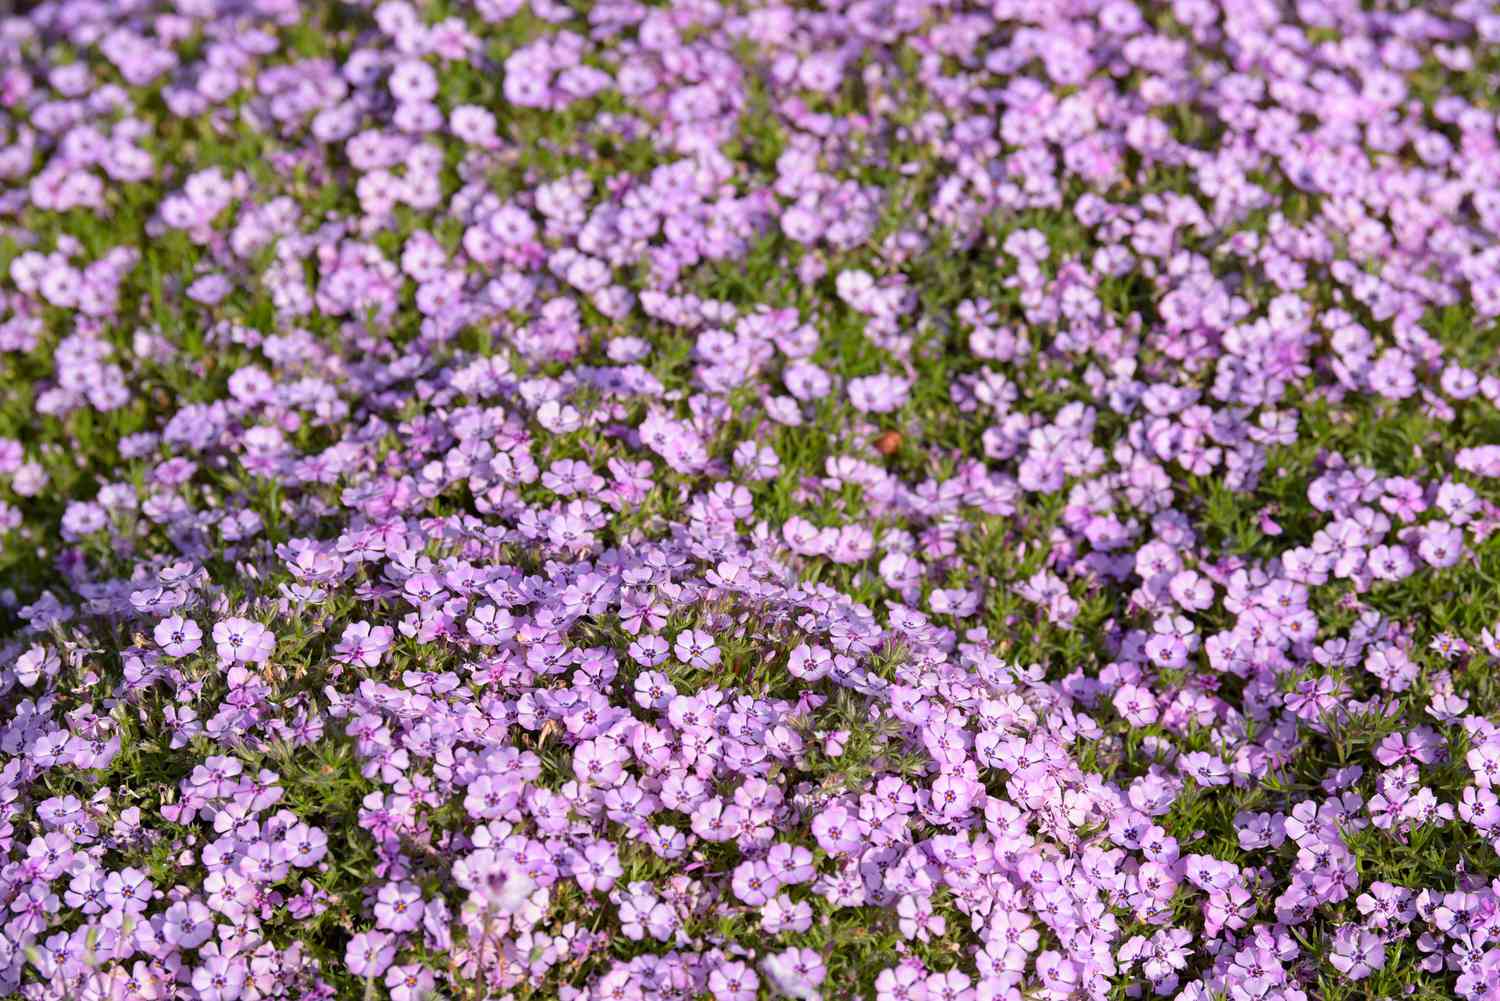 Phlox rampant à petites fleurs violettes groupées en couvre-sol